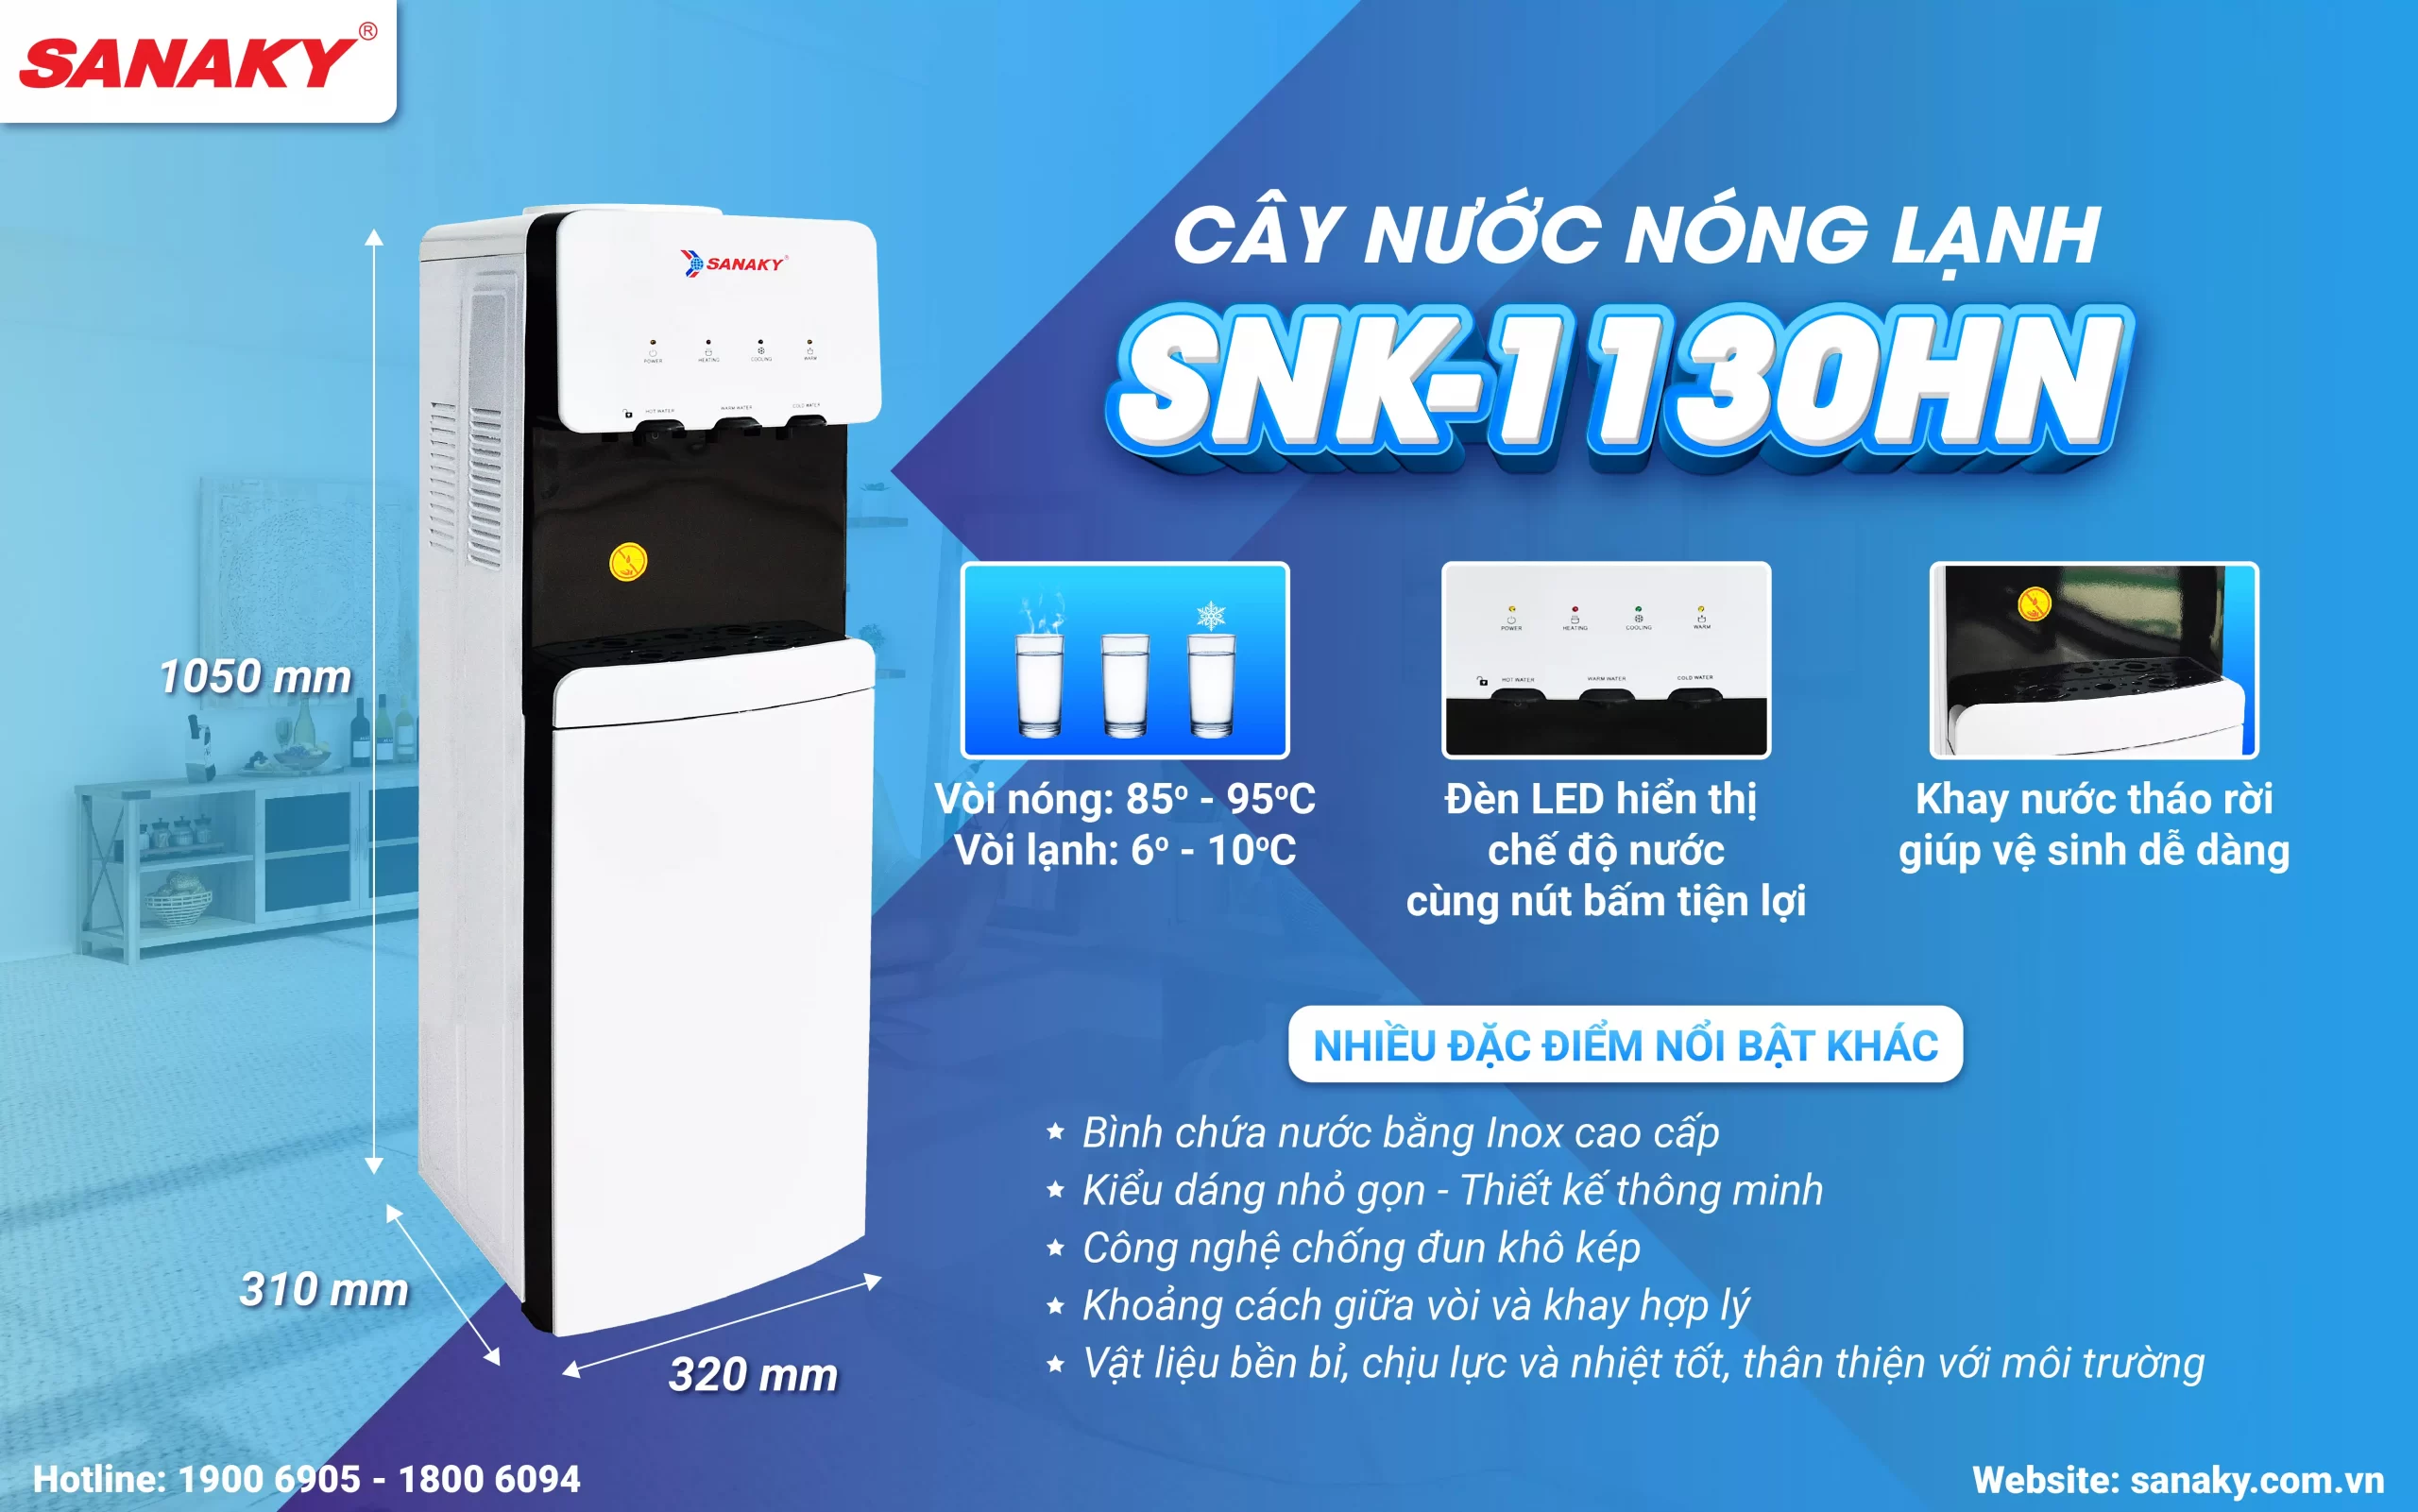 Cây nước nóng lạnh Sanaky SNK-1130HN